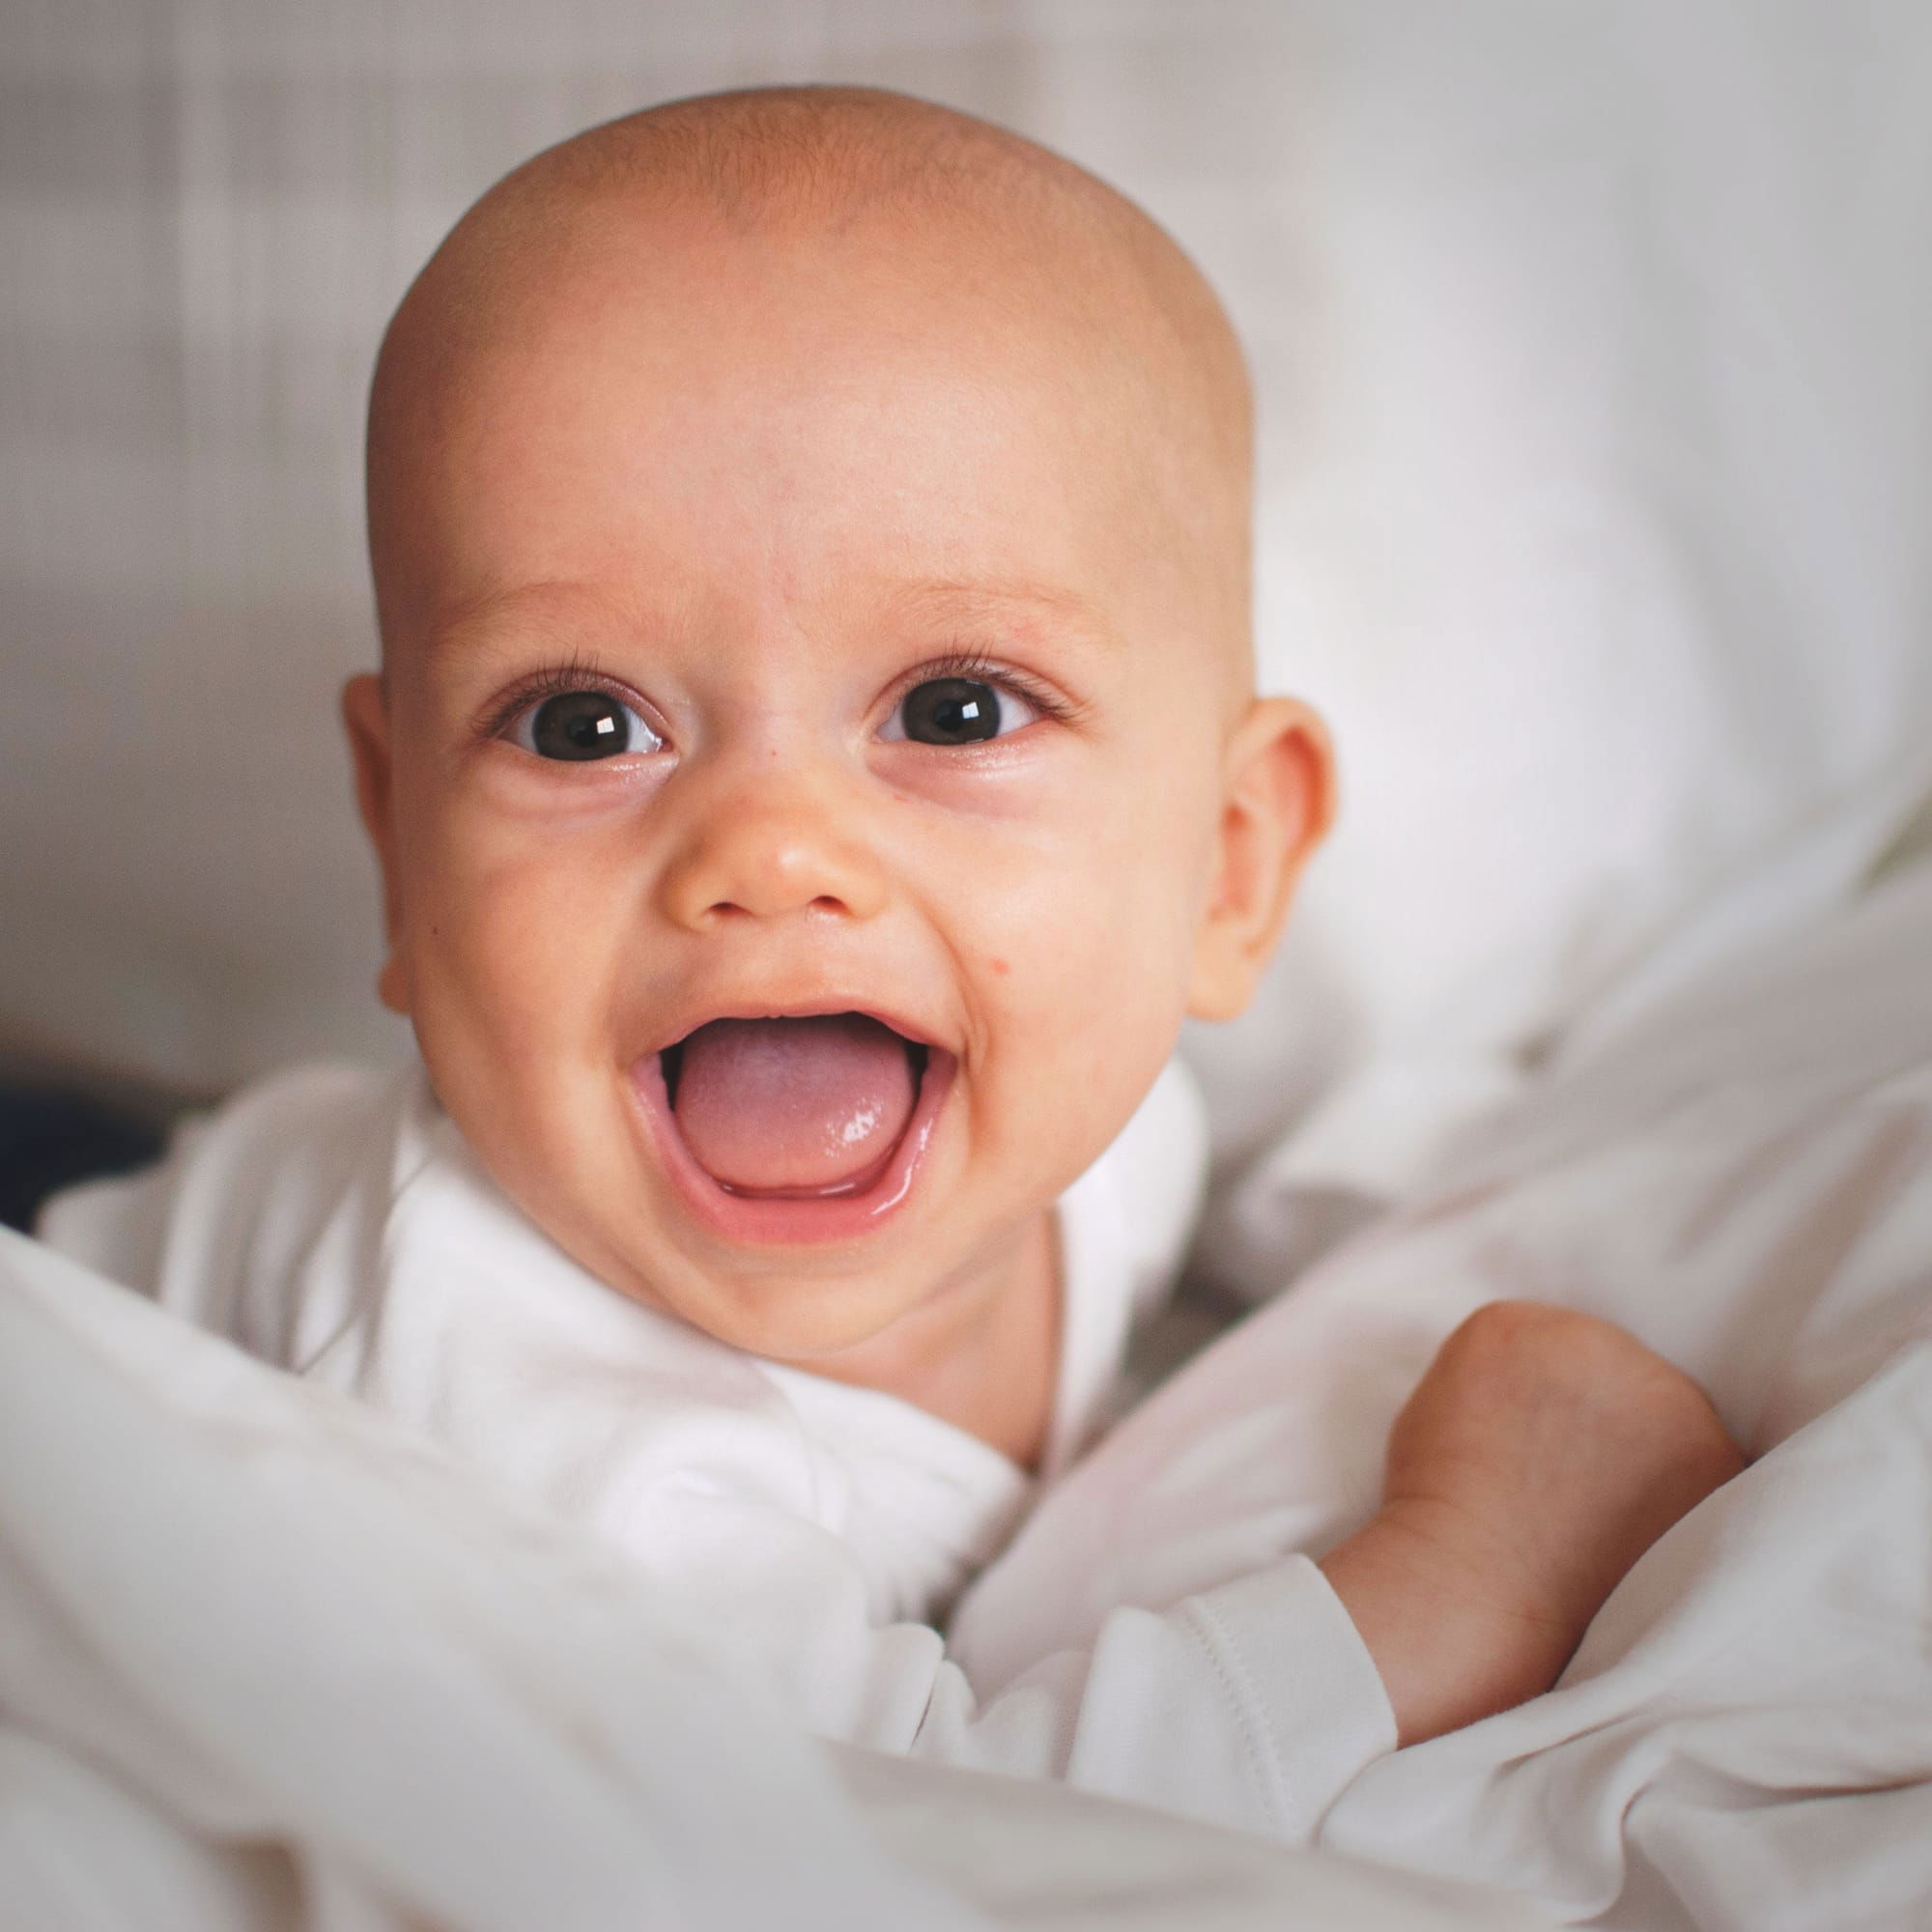 למה תינוקות צוחקים כל כל הרבה